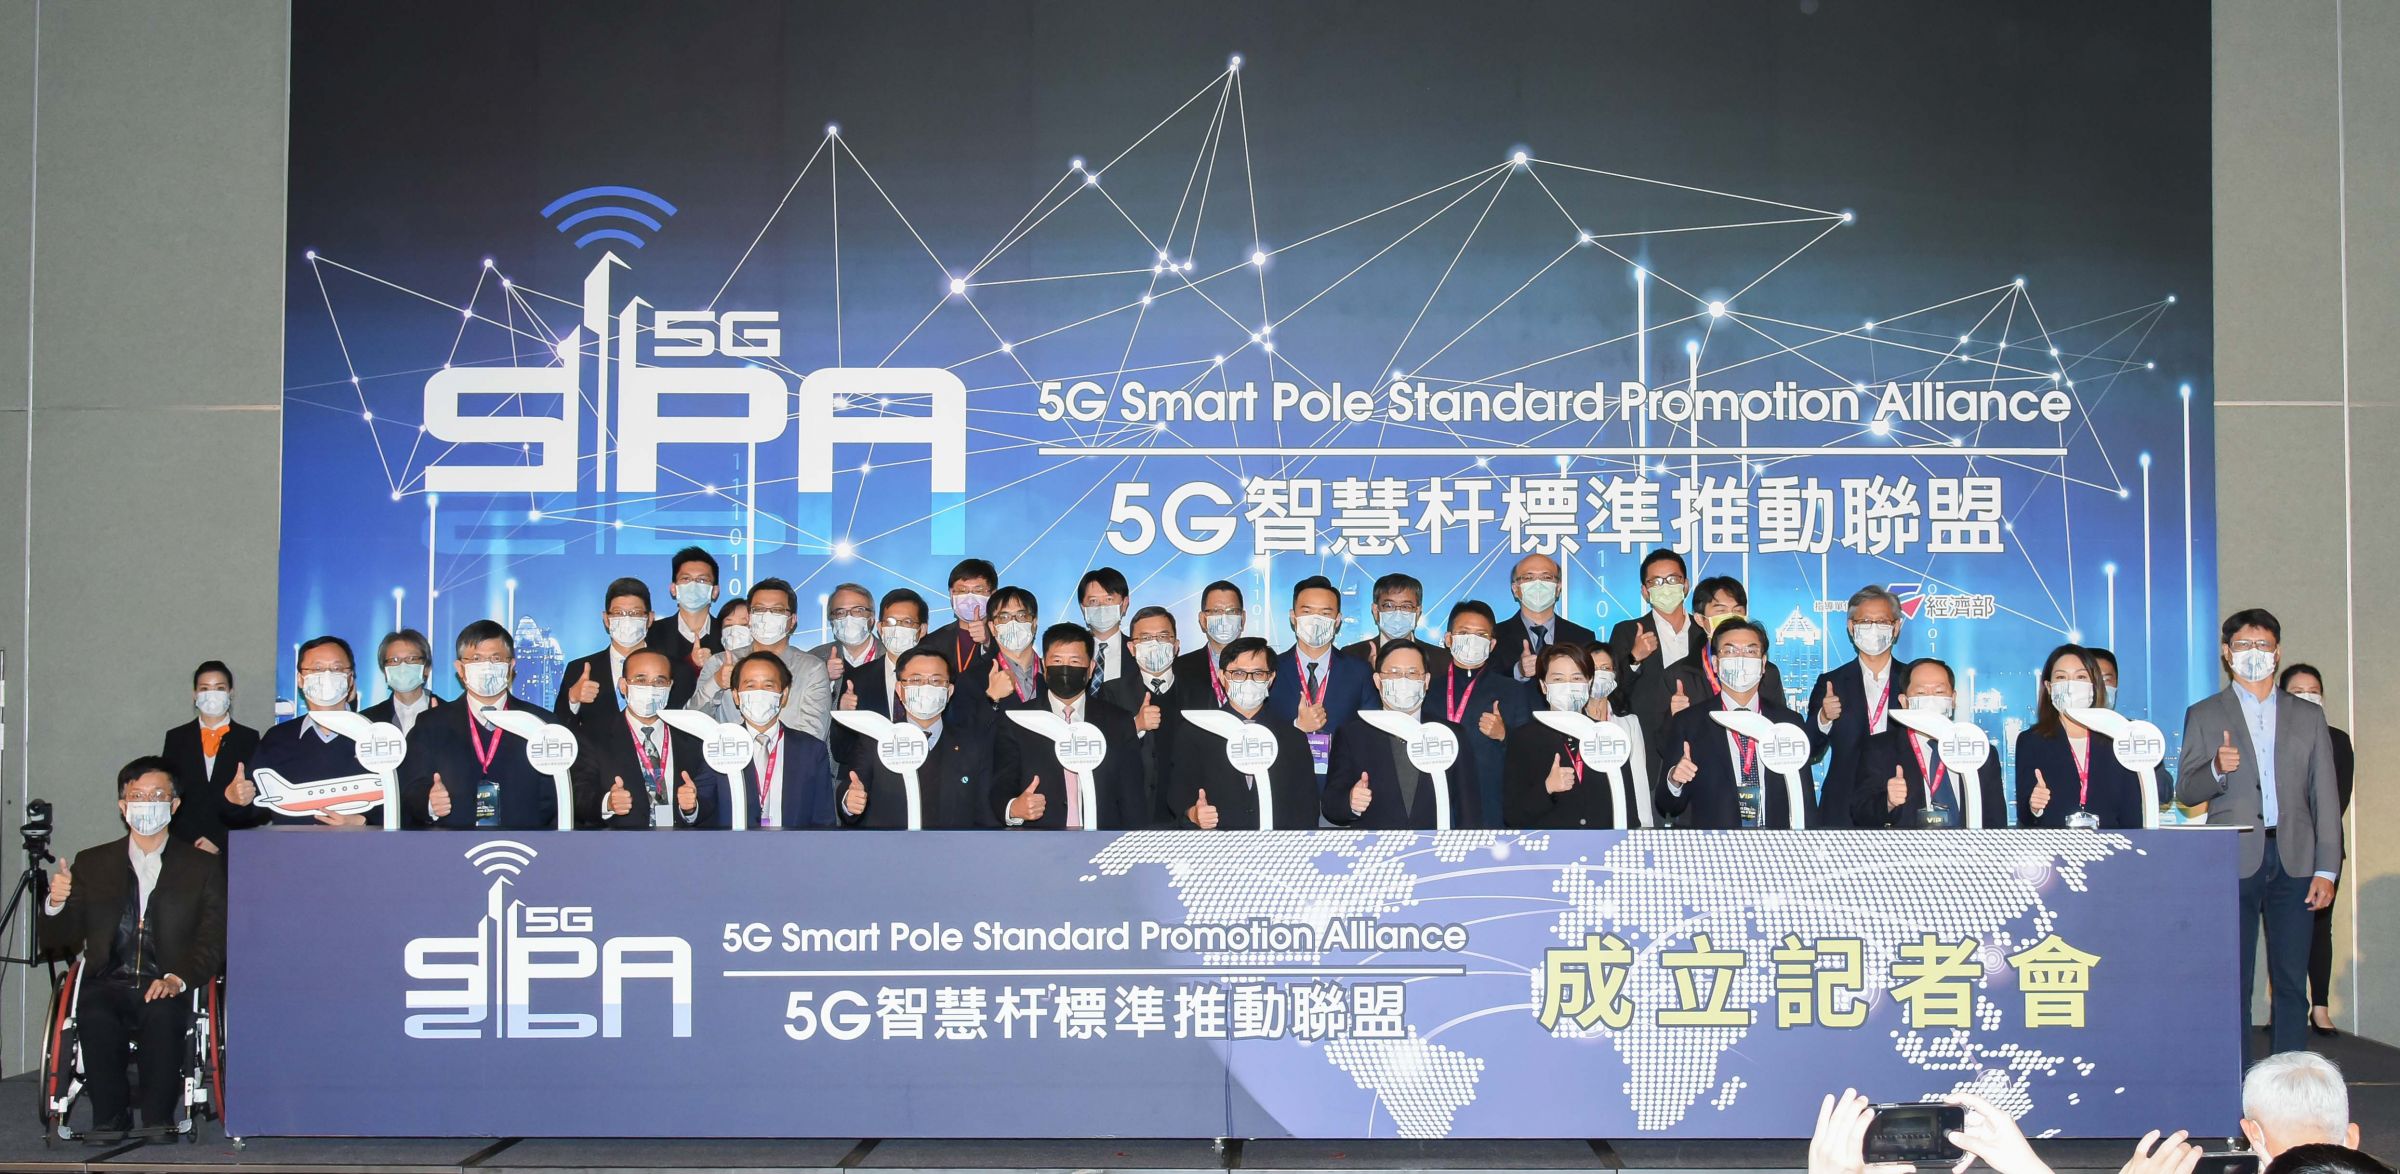 Proscend ने 5G स्मार्ट पोल स्टैंडर्ड प्रमोशन एलायंस की प्रेस कॉन्फ्रेंस में भाग लिया।